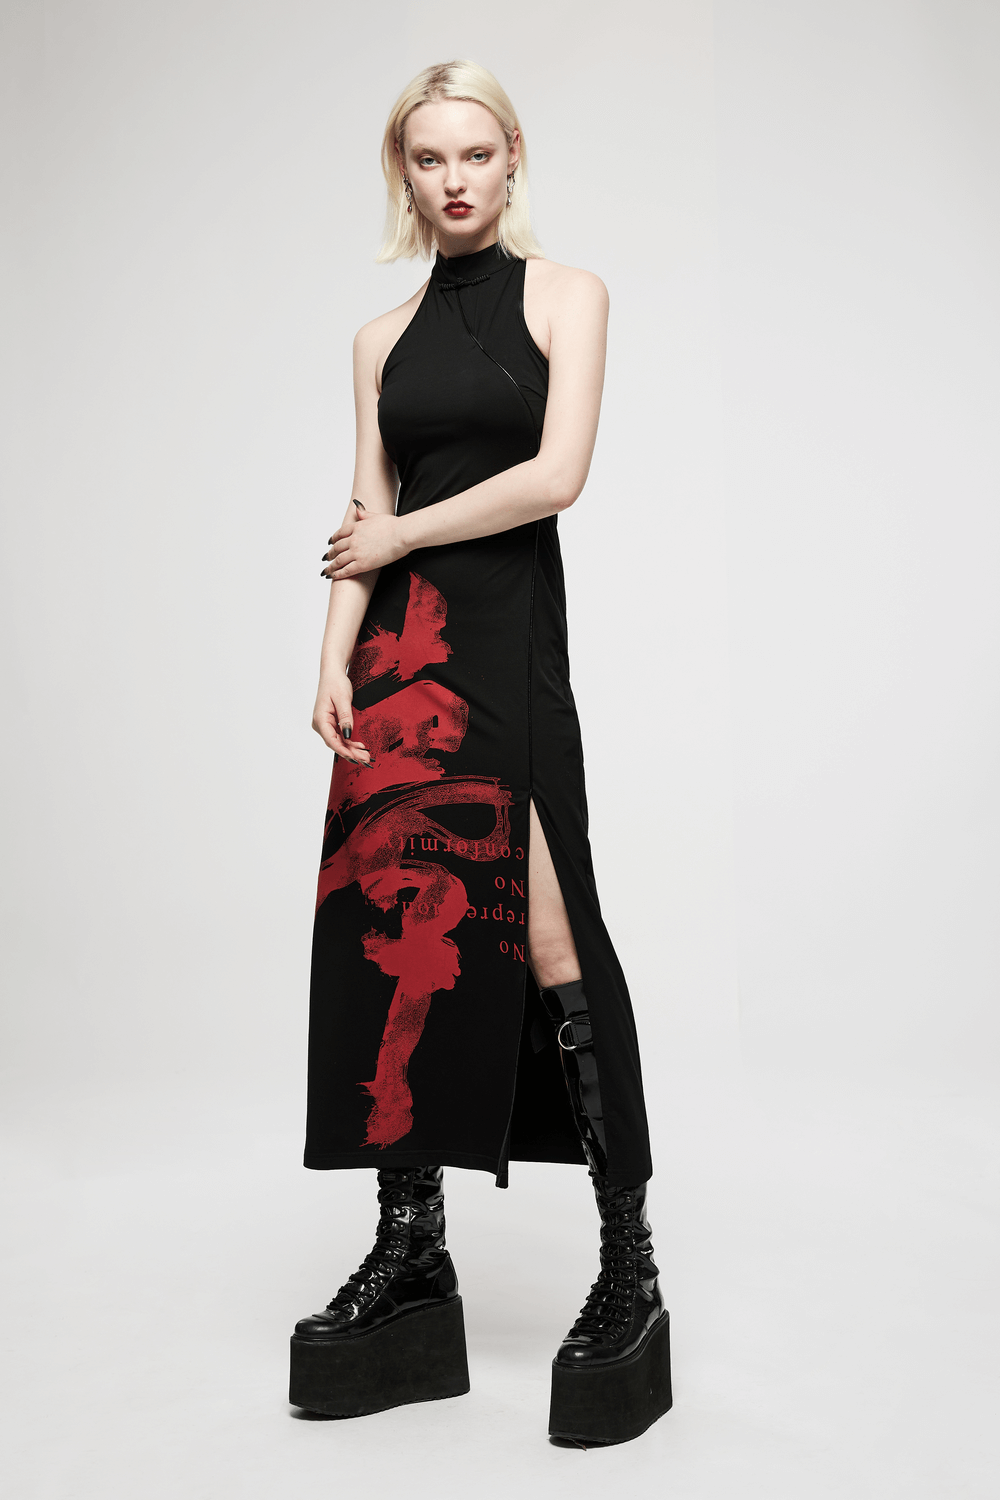 Chinese Ink Art Halter Dress with Side Slit Elegance